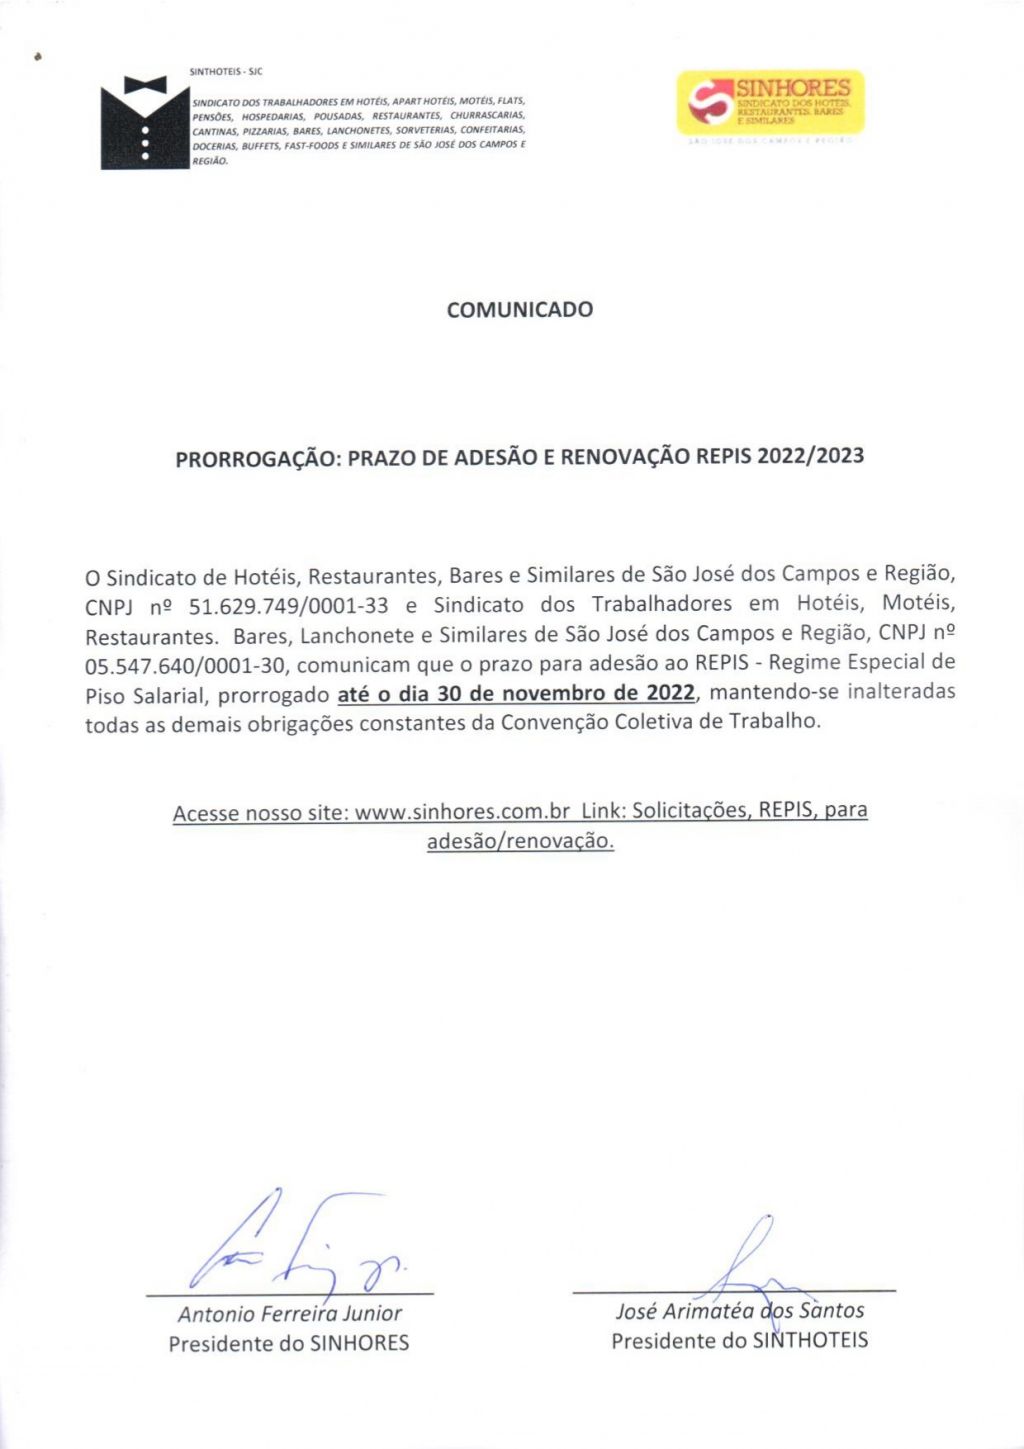 REPIS da base São José dos Campos tem prazo prorrogado para 30 de novembro